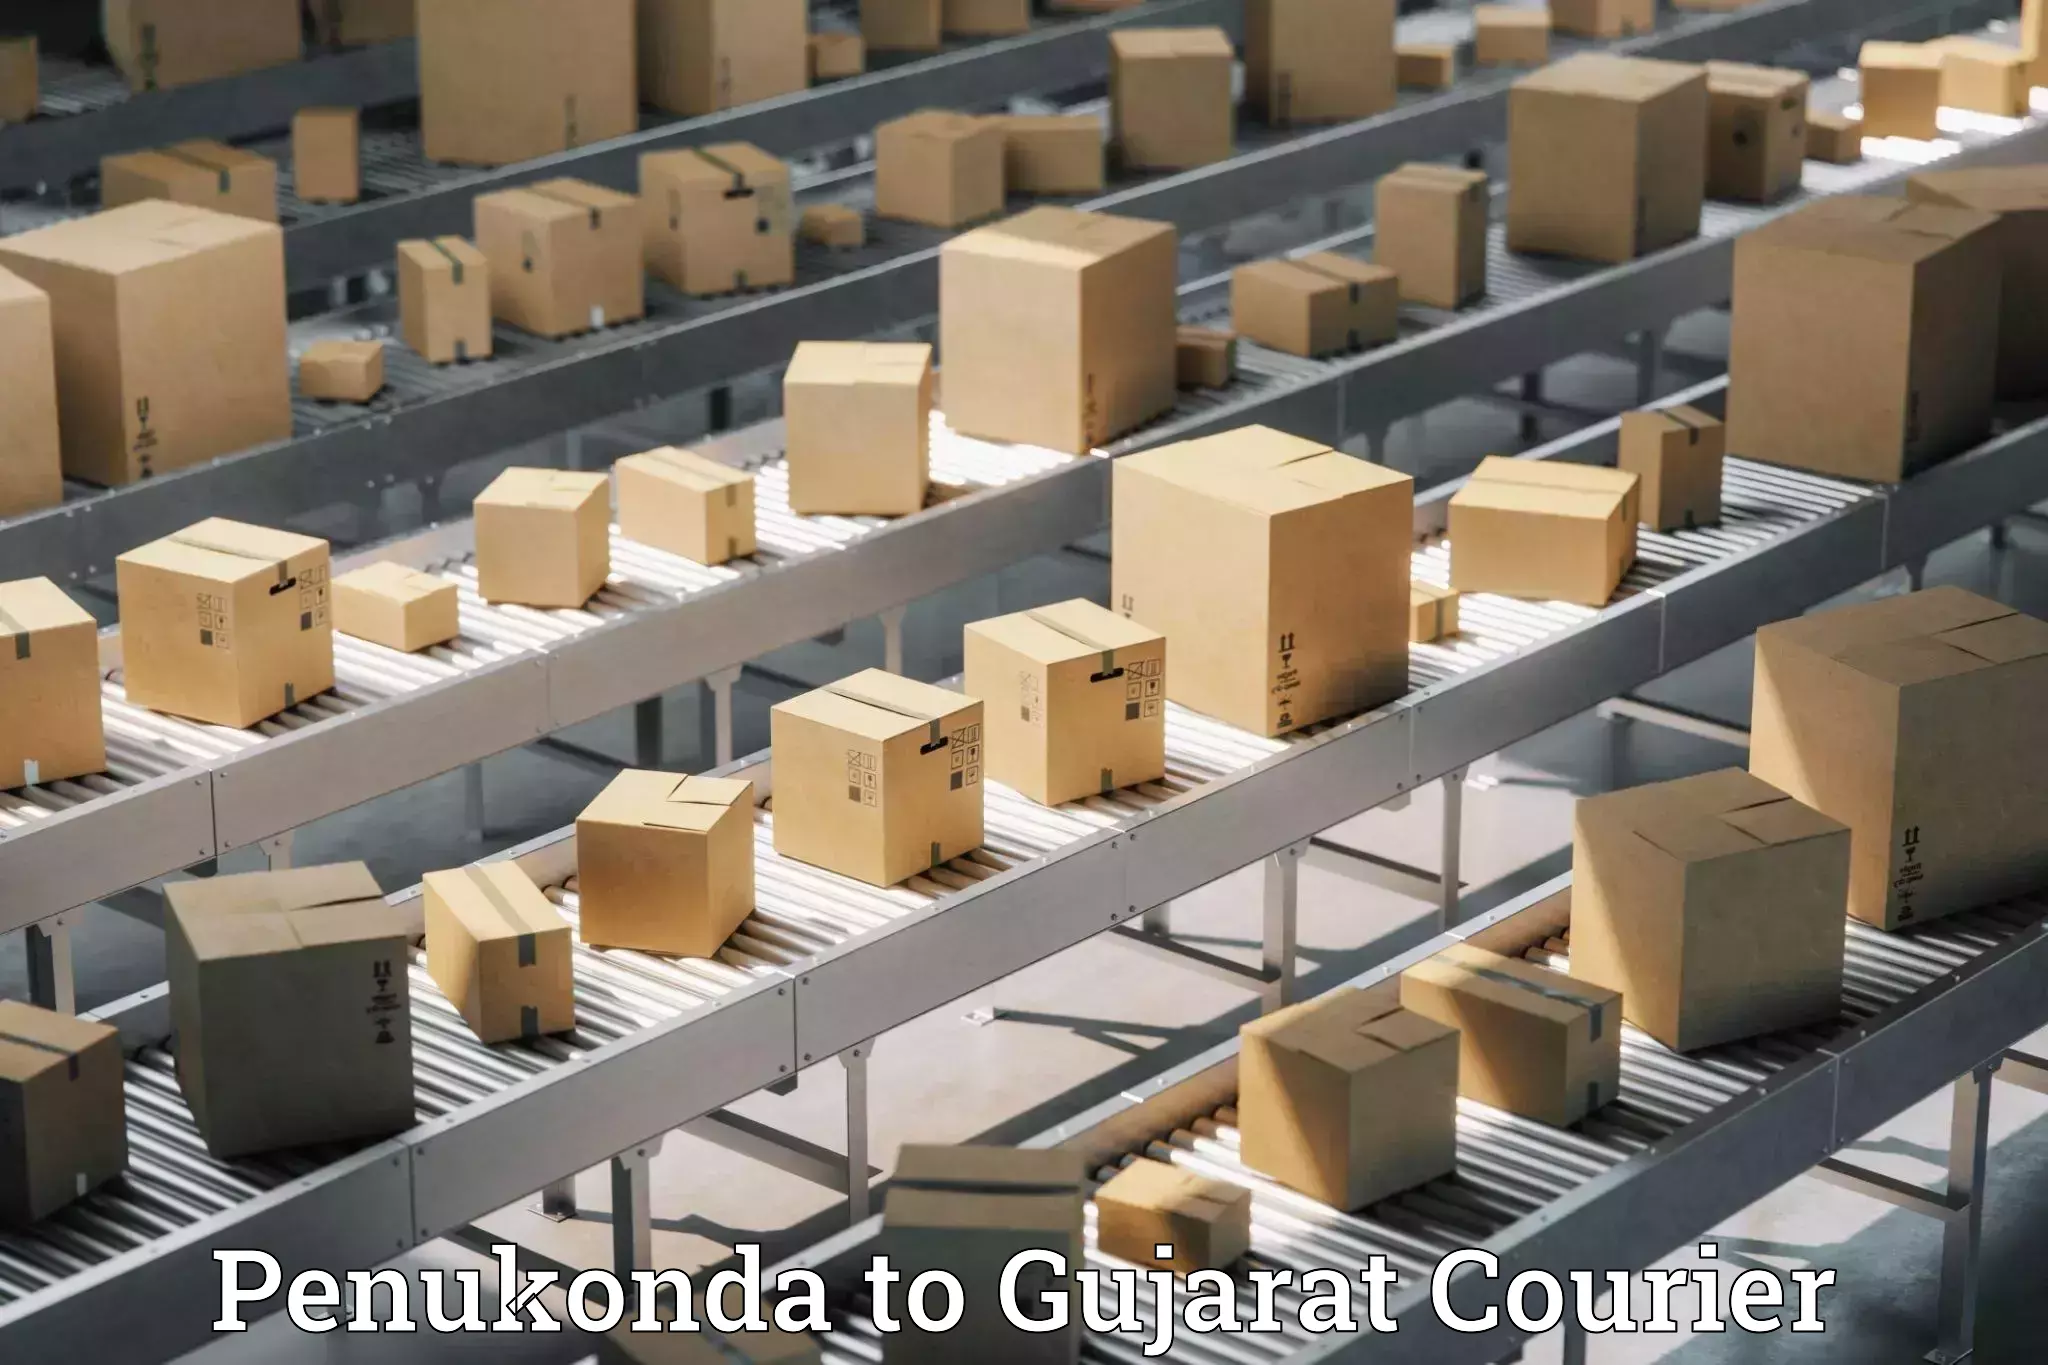 Baggage shipping experts Penukonda to Gujarat